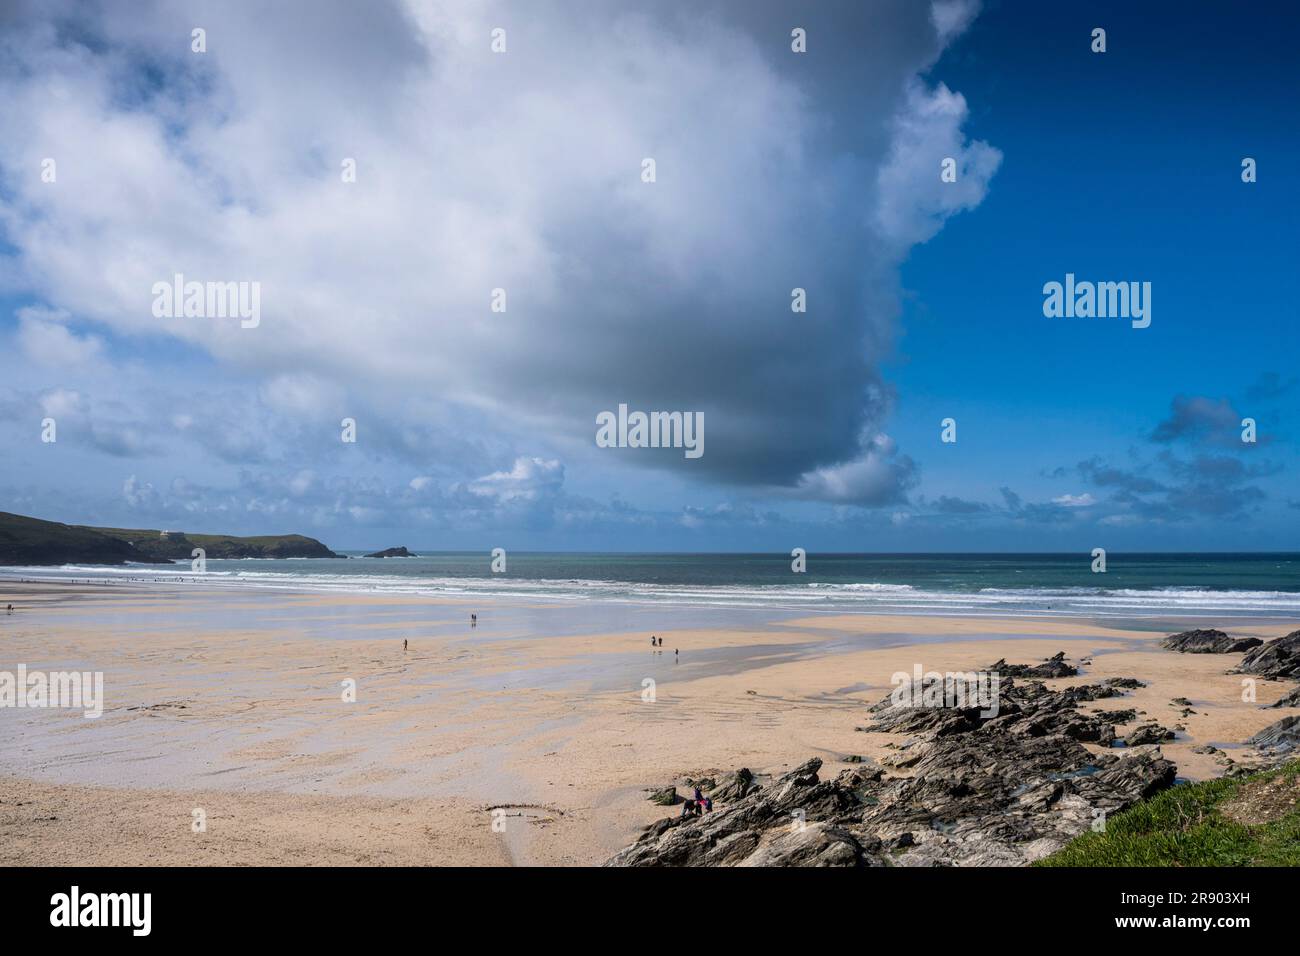 Dramatische Wolkenbildung über einem ruhigen Fistral Beach bei Ebbe in Newquay in Cornwall, England, Großbritannien. Stockfoto